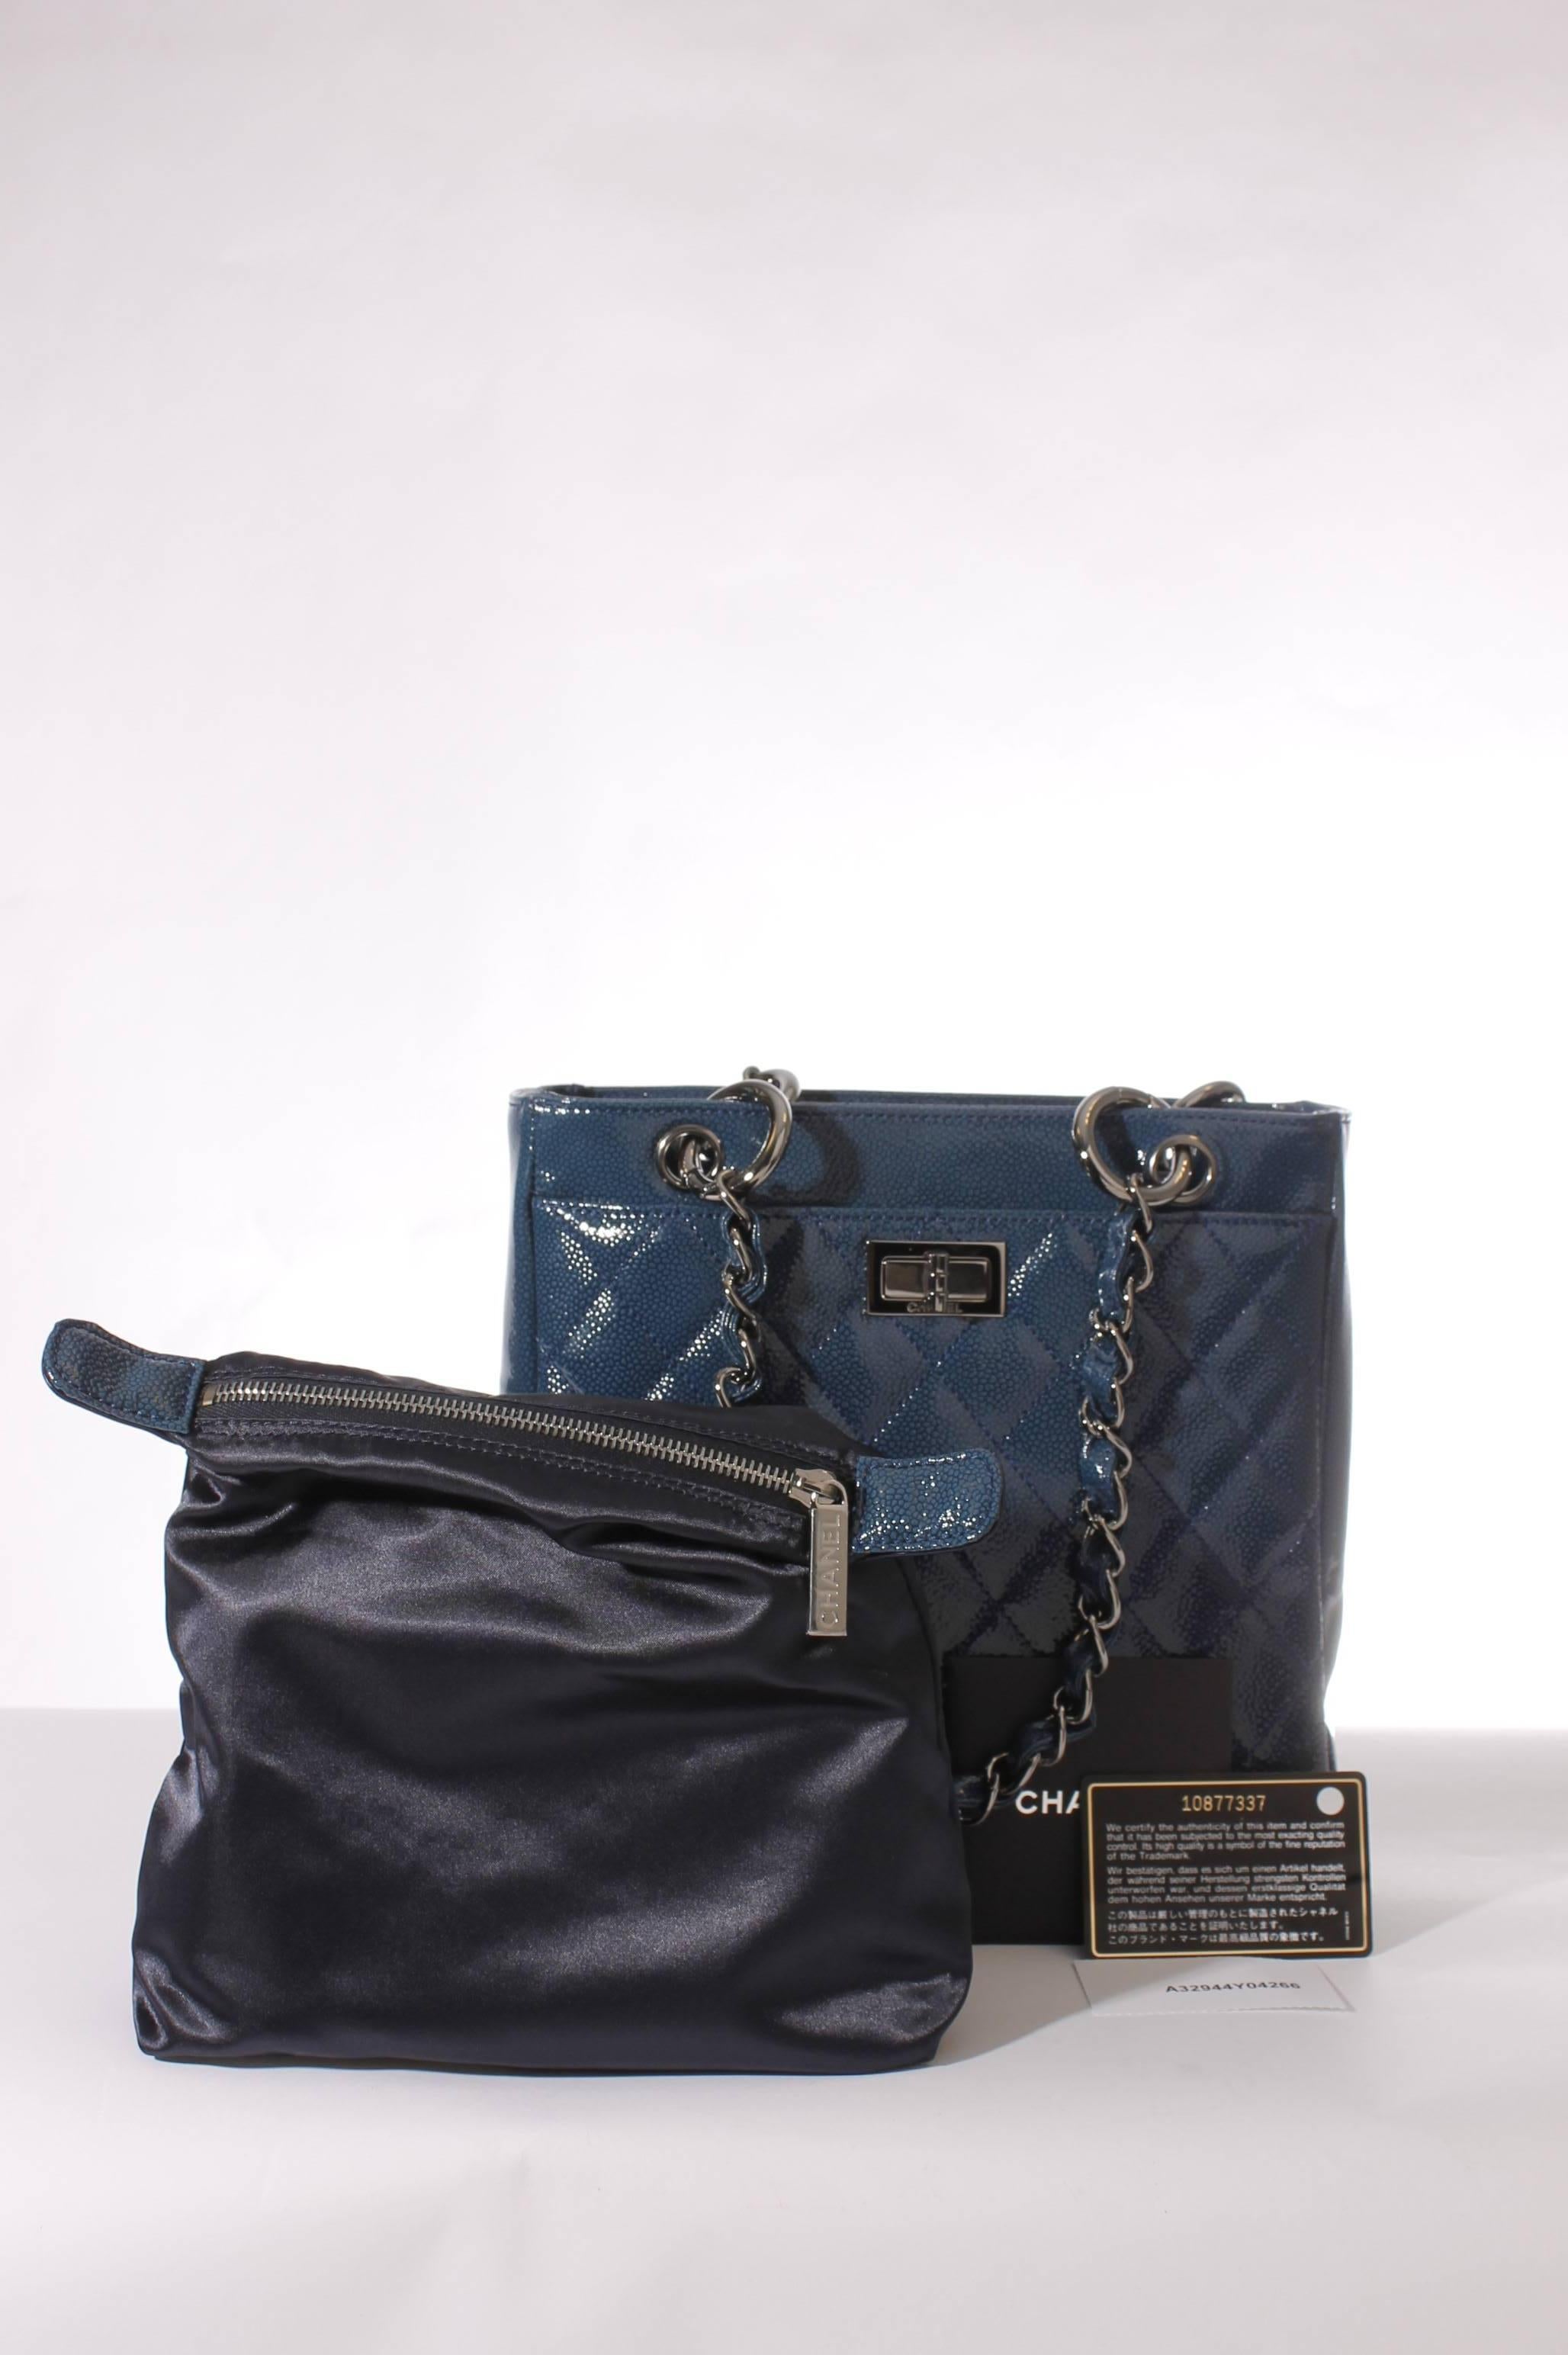 Women's Chanel Mini Shopper Tote Bag - blue patent caviar leather